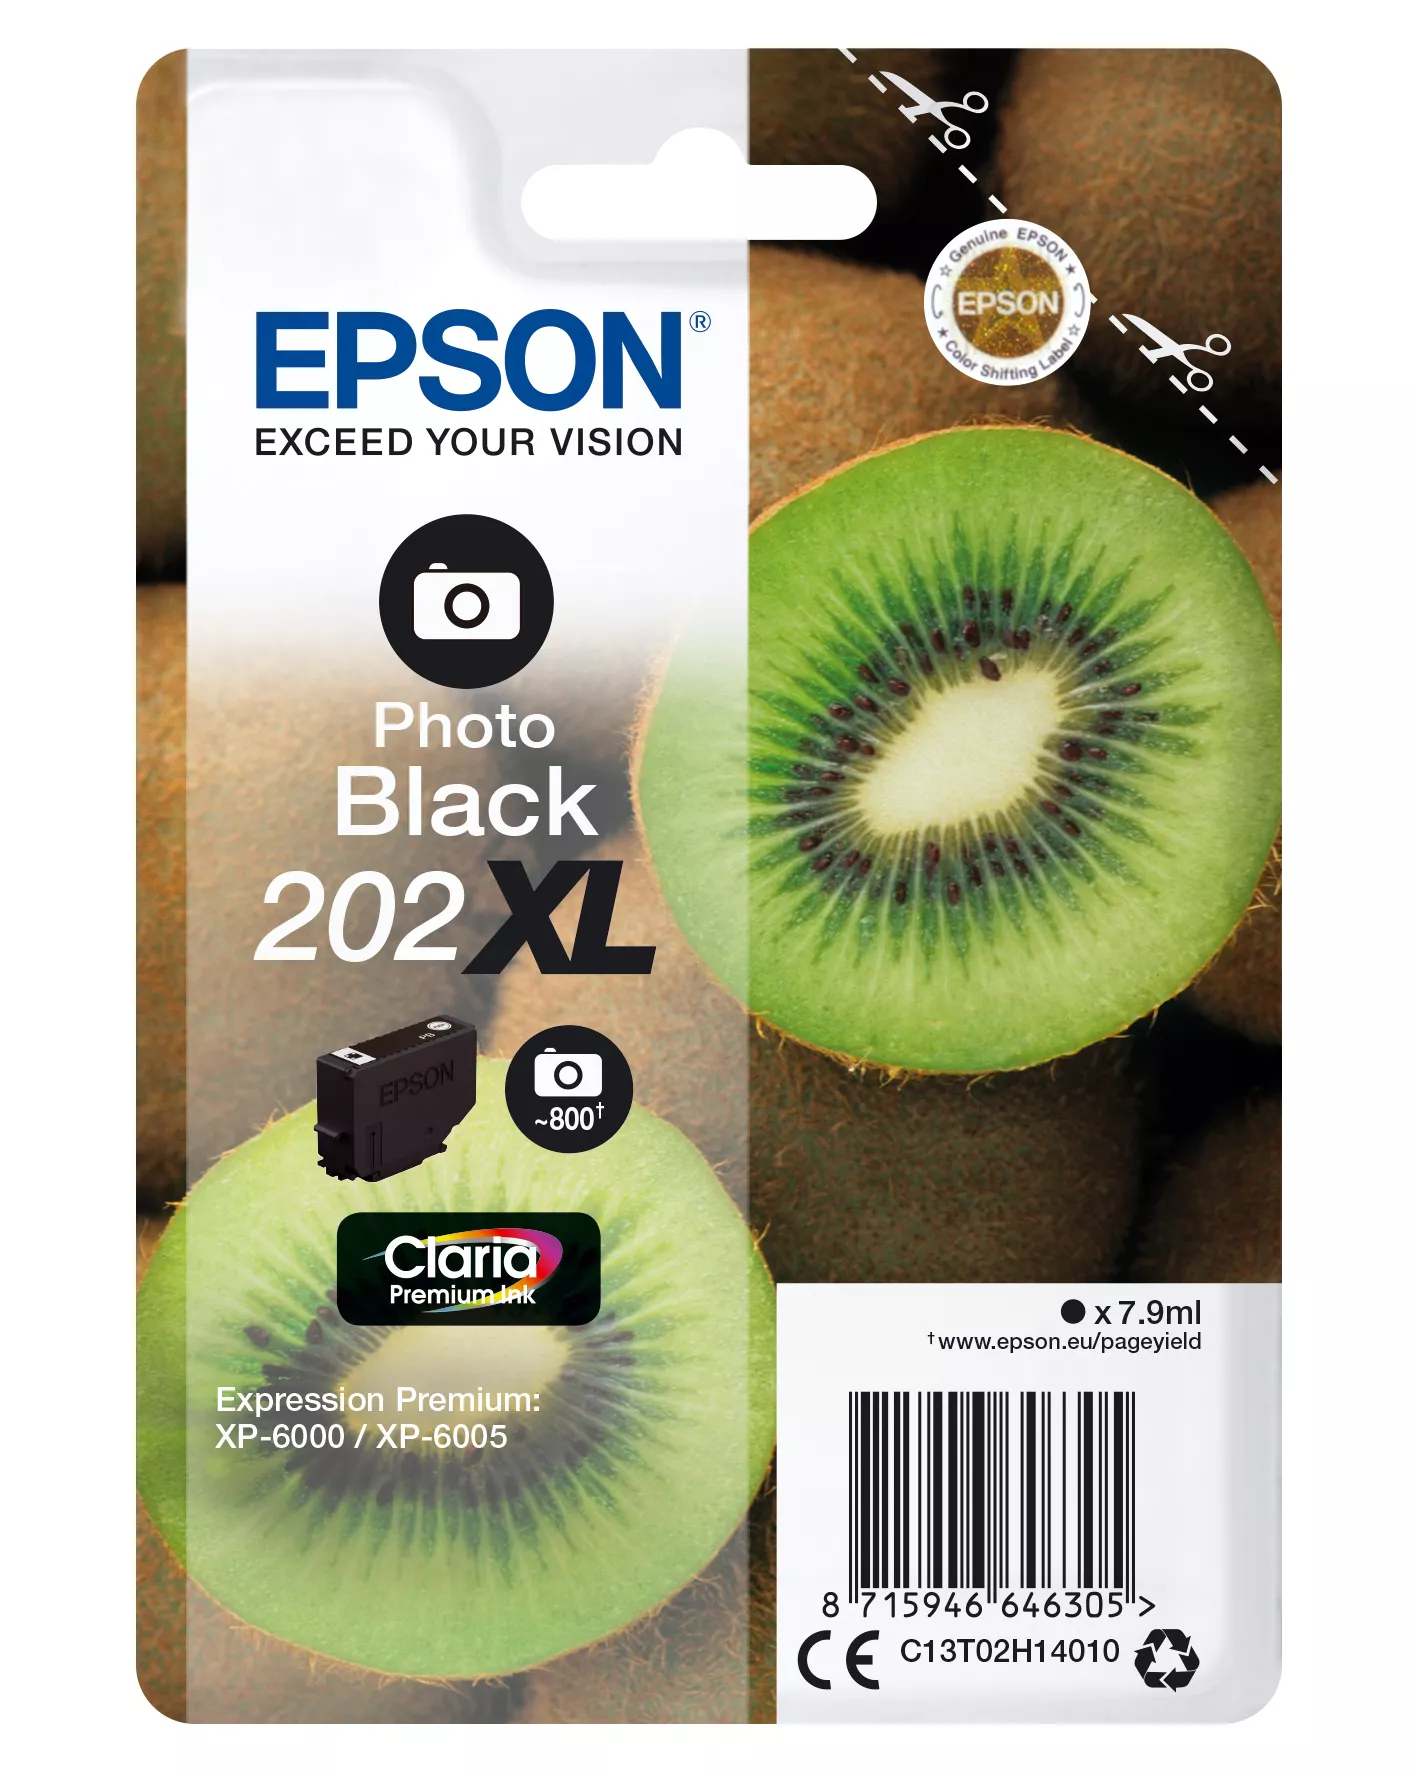 Achat EPSON Encre Claria Premium - Cartouche Kiwi 202 Noir au meilleur prix